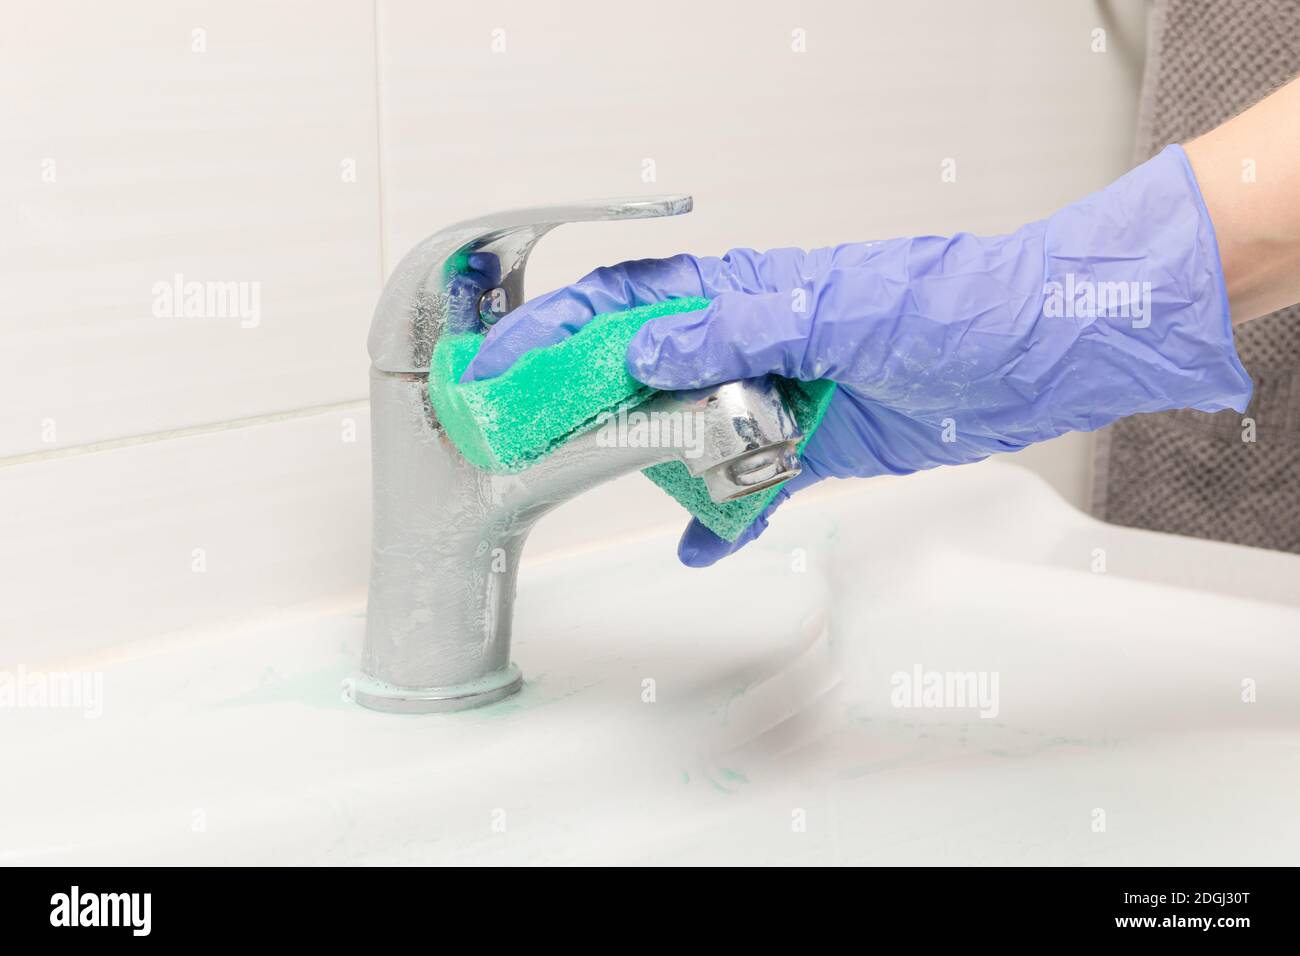 une main femelle dans un gant bleu essuie le mélangeur avec une éponge en mousse verte dans la salle de bains. Nettoyage de la maison Banque D'Images